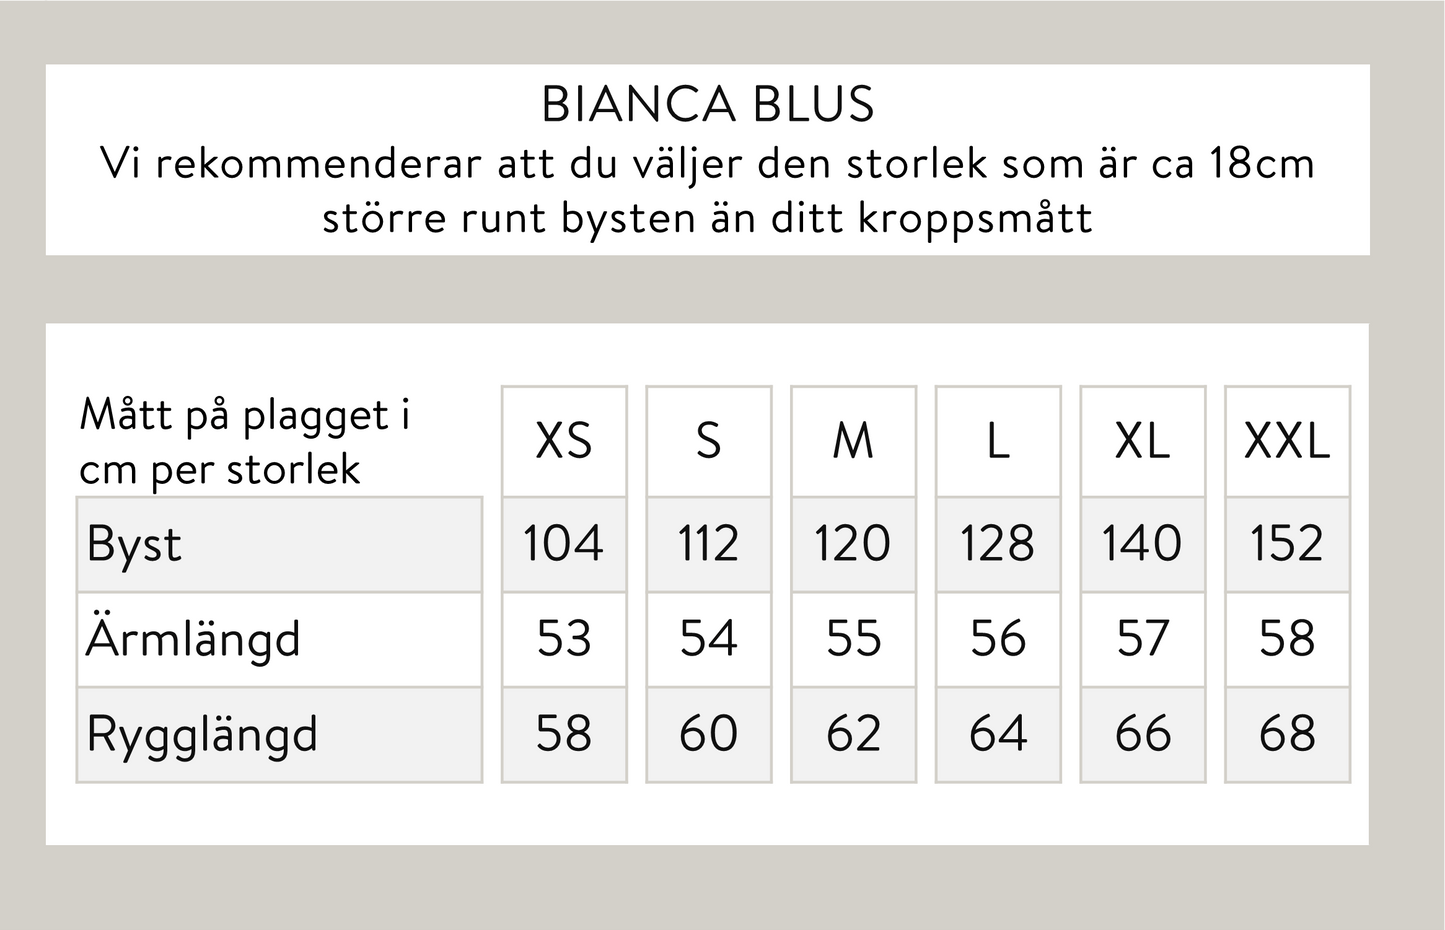 Bianca blus - Vit